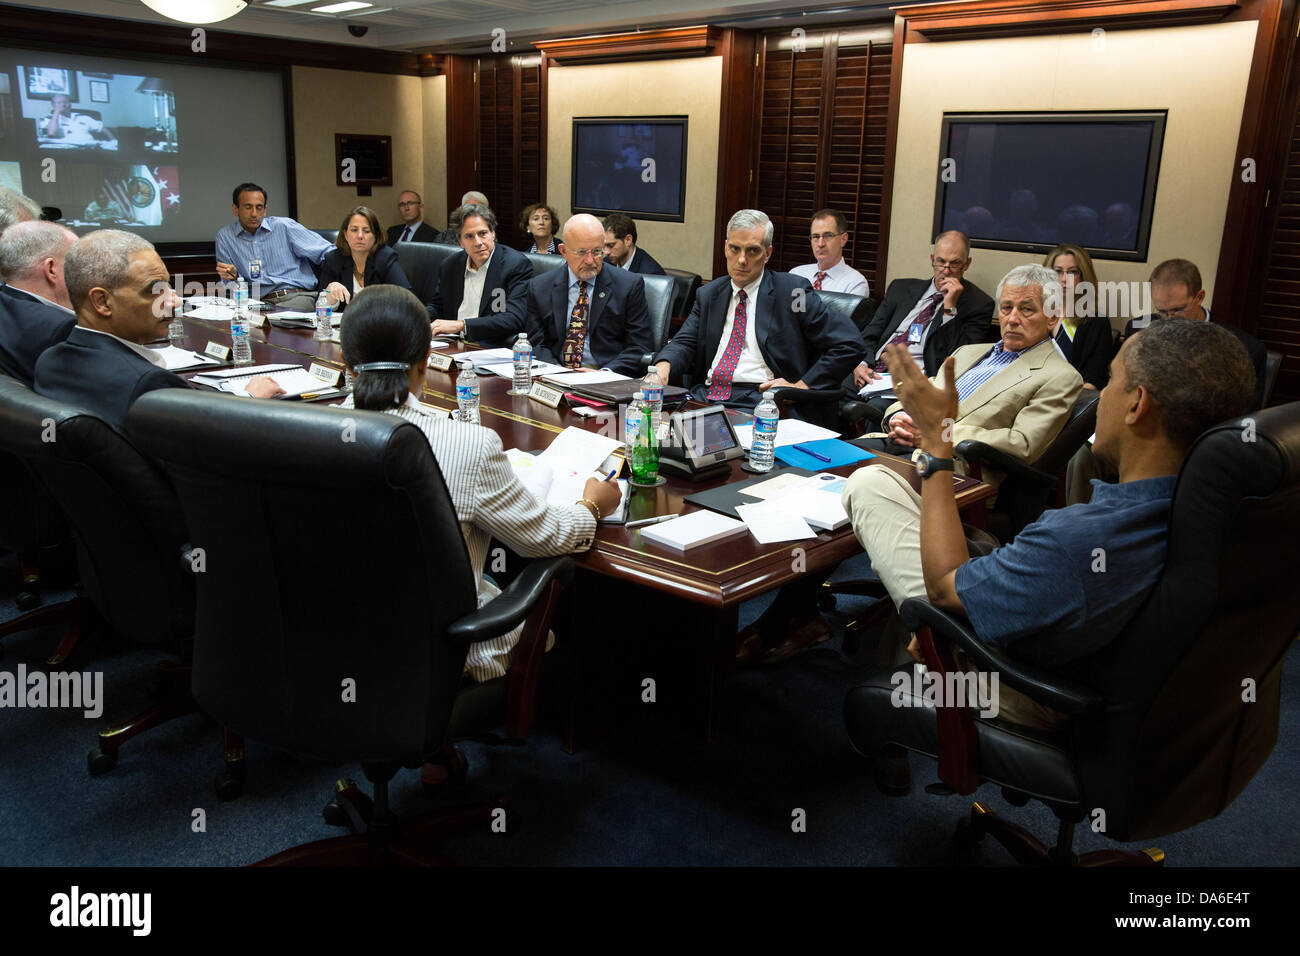 Le président américain Barack Obama rencontre les membres de son équipe de sécurité nationale pour discuter de la crise politique en Egypte dans la salle de la Maison Blanche le 4 juillet 2013 à Washington, DC. Banque D'Images